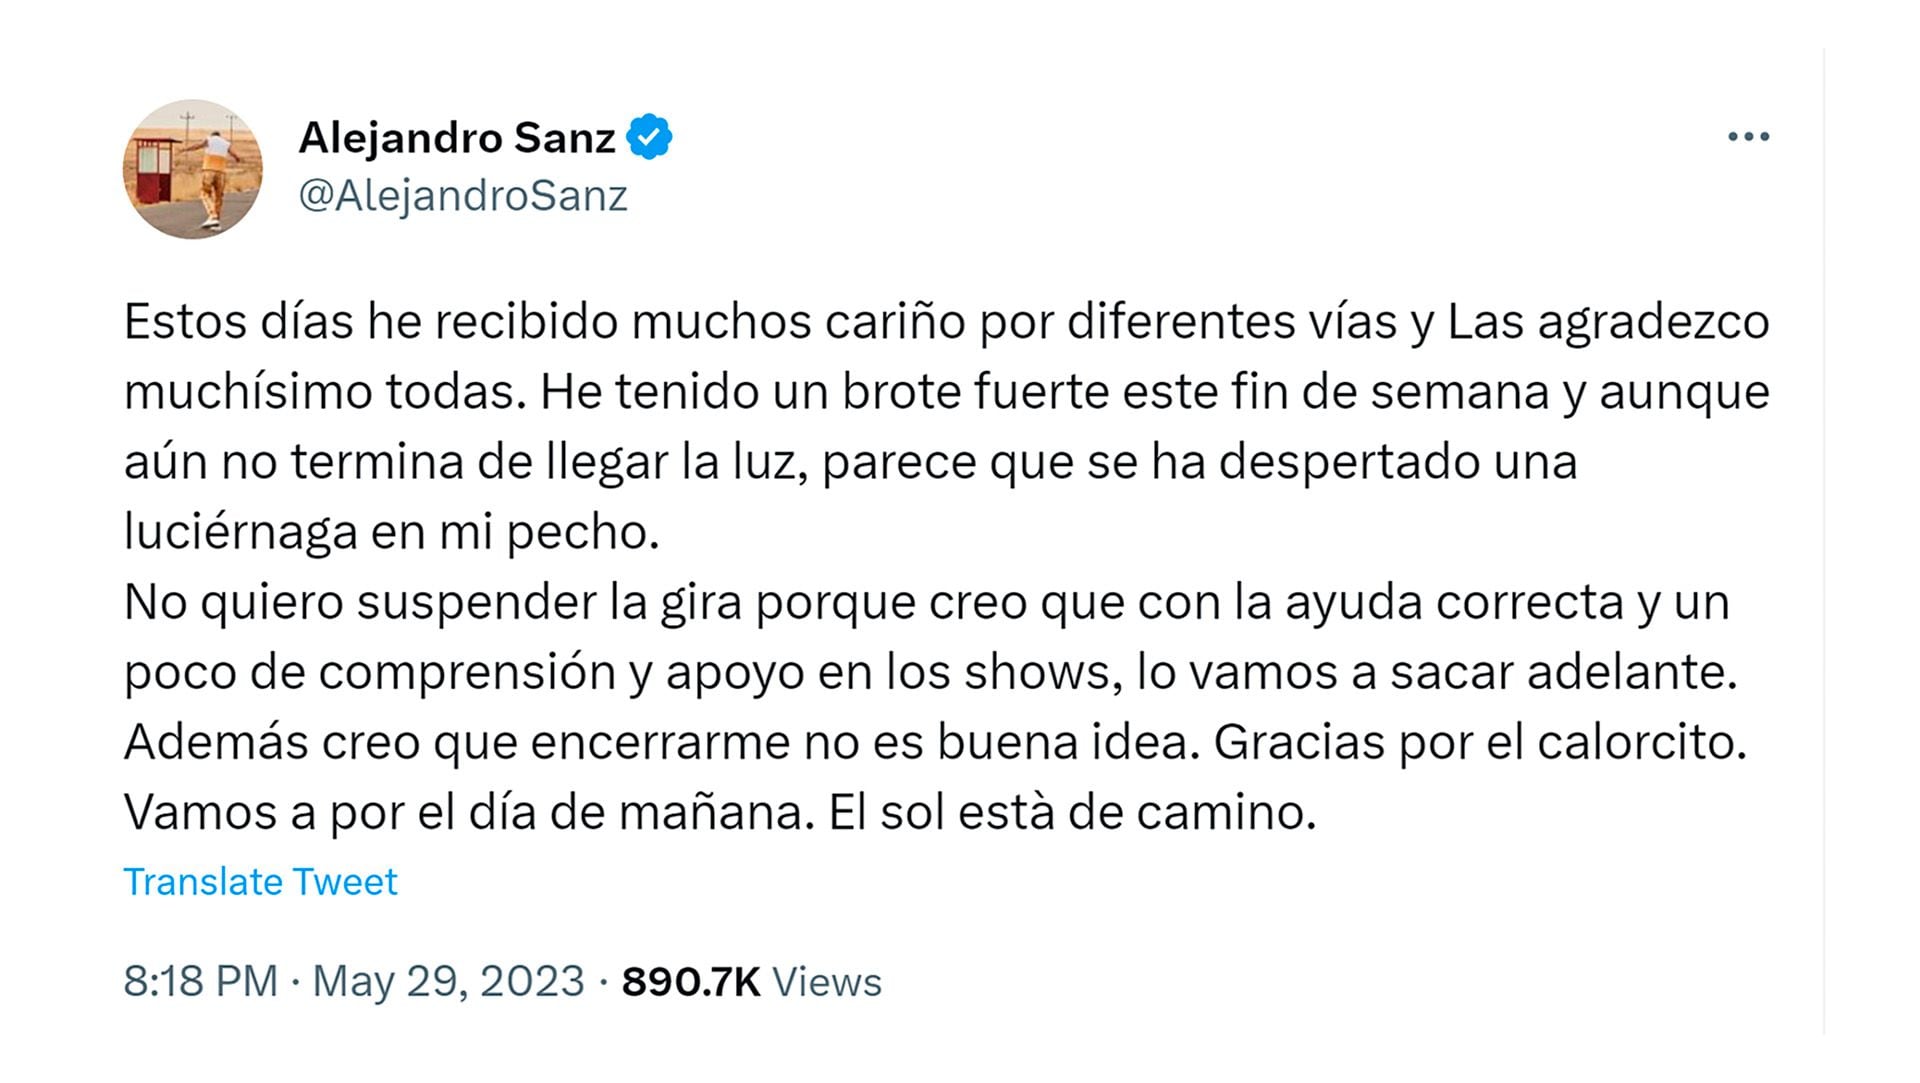 Tweet de Alejandro Sanz